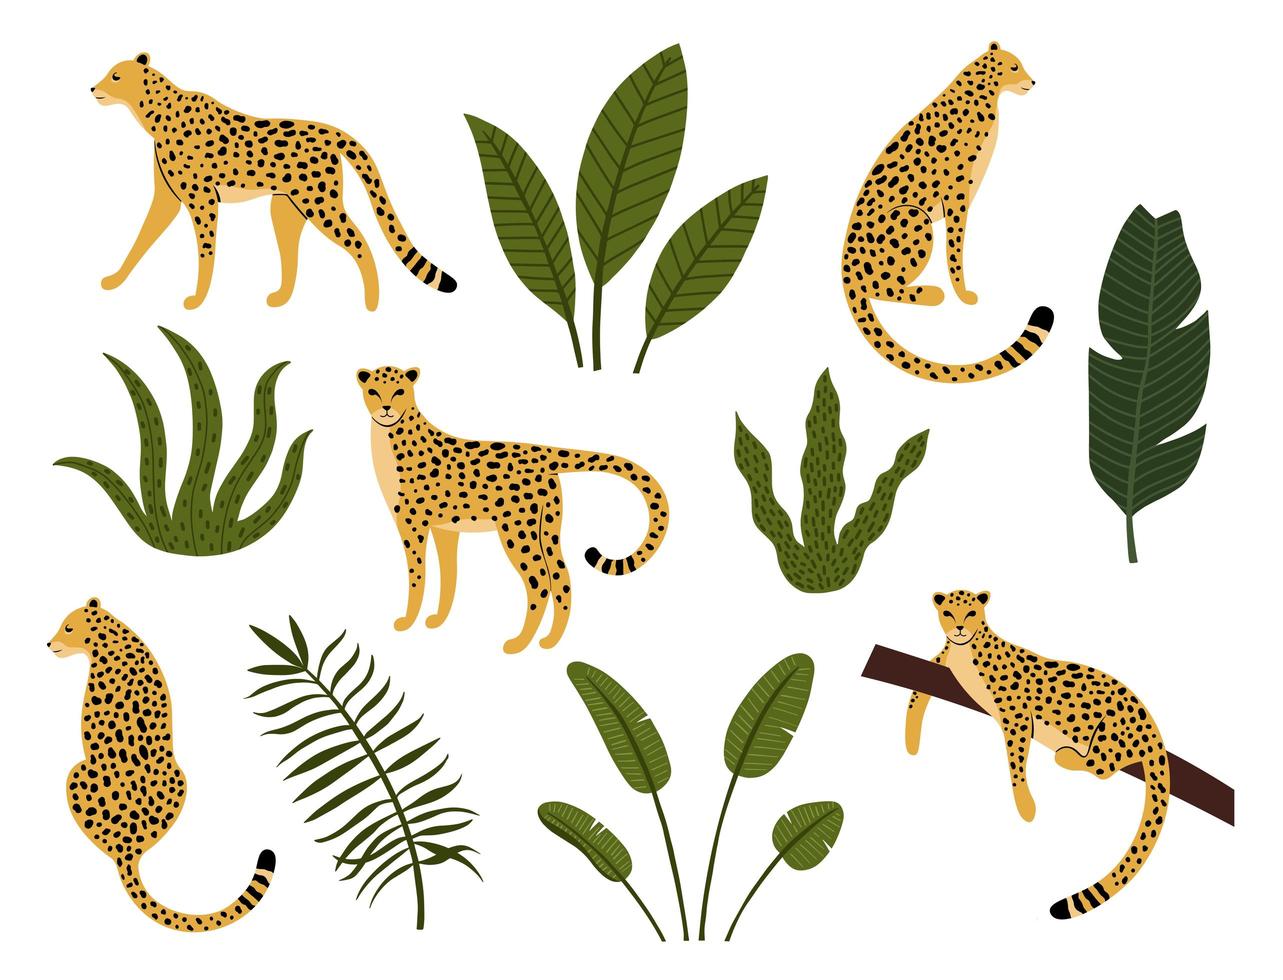 samling av leoparder, exotiska löv, tropiska växter vektor